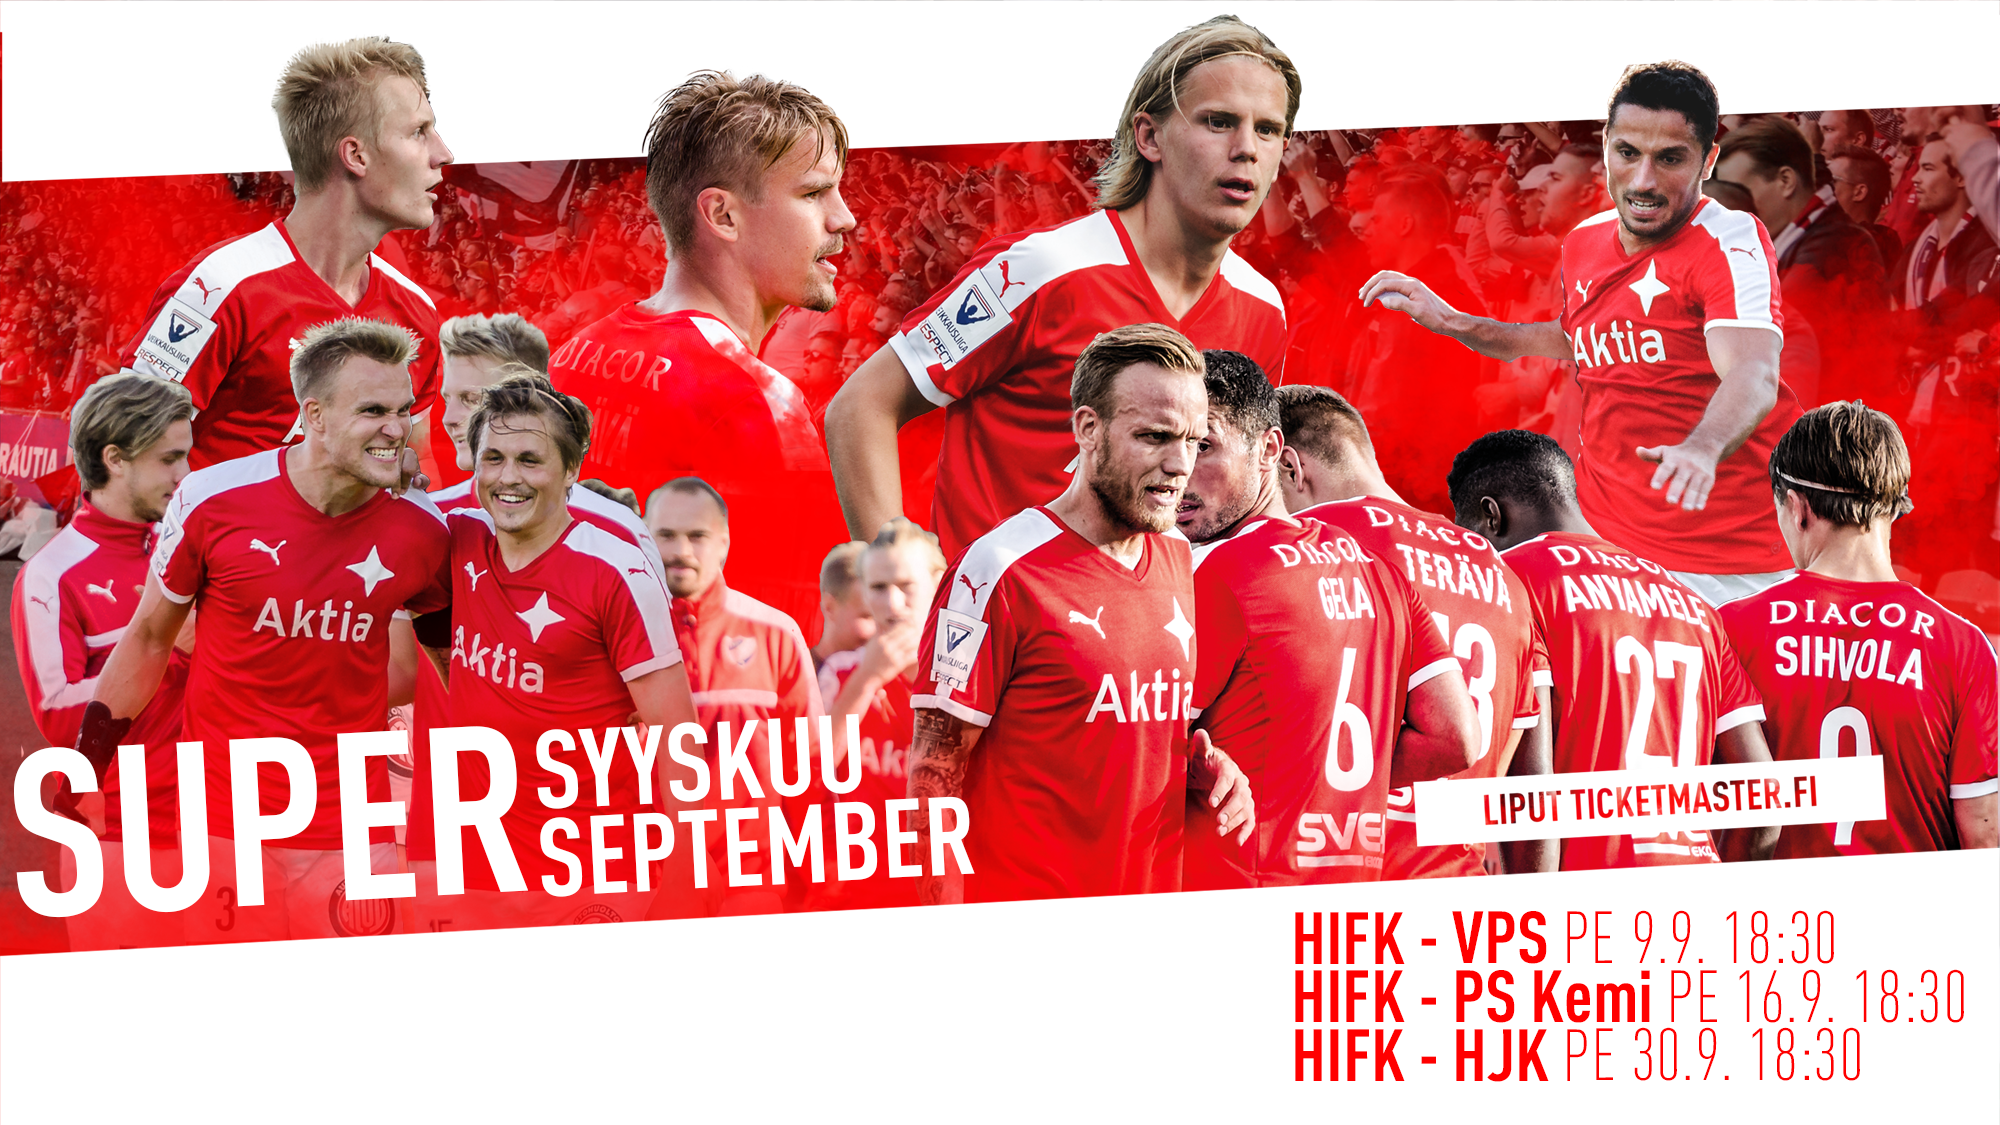 Supersyyskuu – HIFK-VPS otteluun 13 euron ennakkoliput Itäkatsomoon